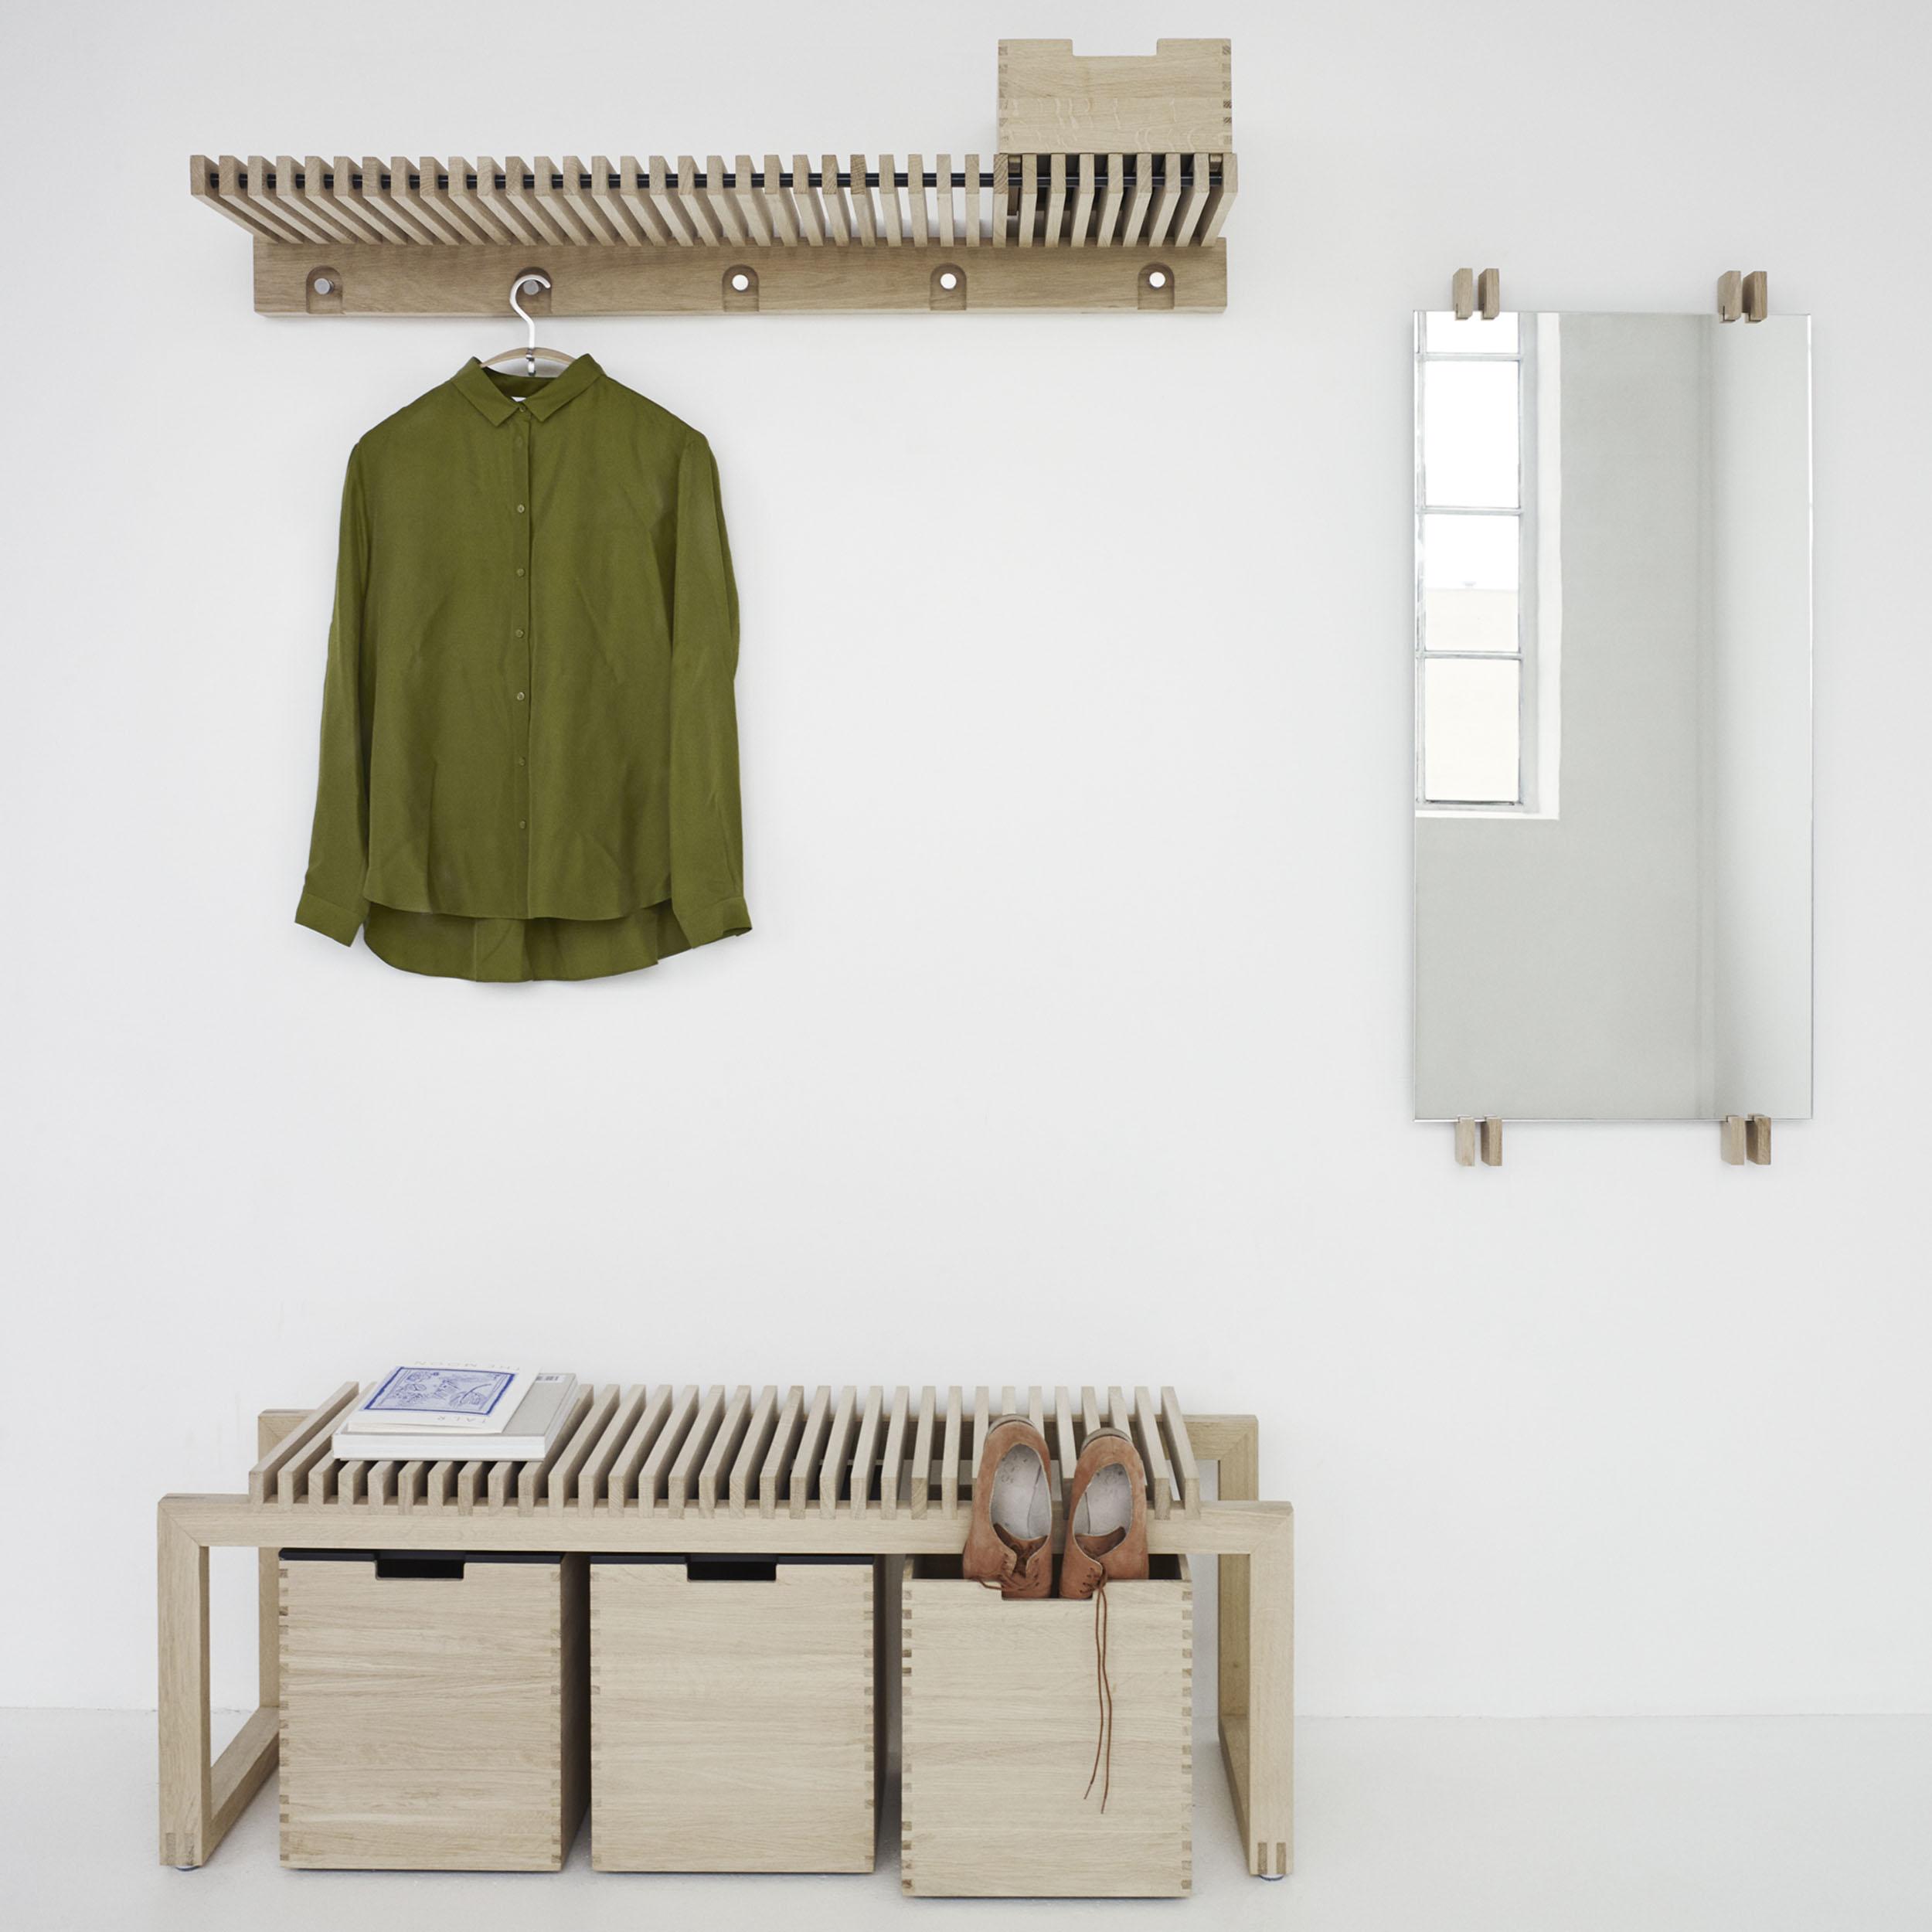 Die Cutter Garderoben-Serie im ästhetischen Design #spiegel #aufbewahrung #wandspiegel #holzbank #garderobe #sitzbank #kleiderbügel #kleiderablage ©Skagerak